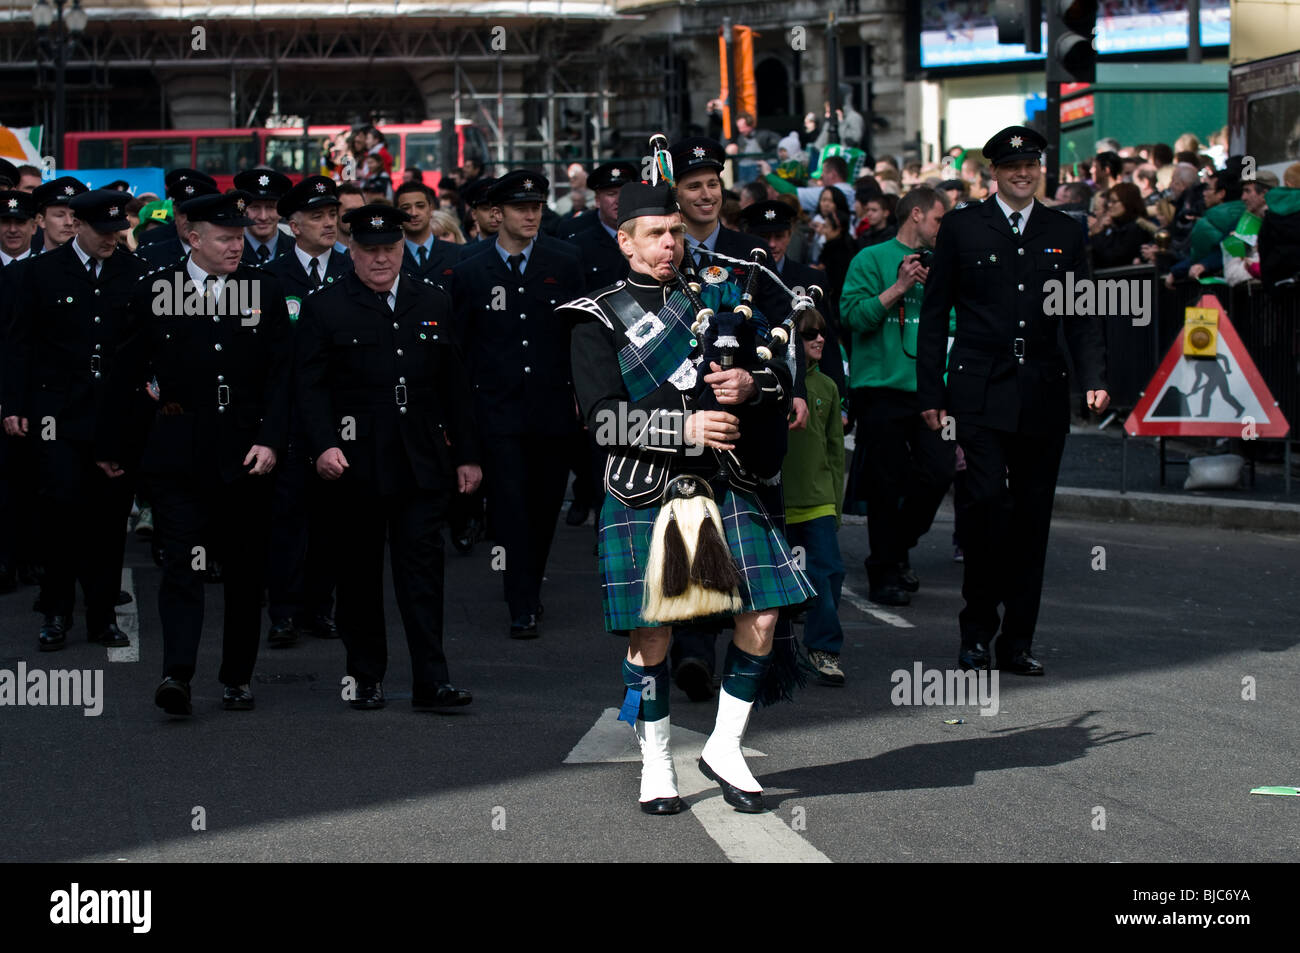 Ein Pfeifer führt eine Parade der Feuerwehr während der St. Patricks Day Parade in London. Stockfoto